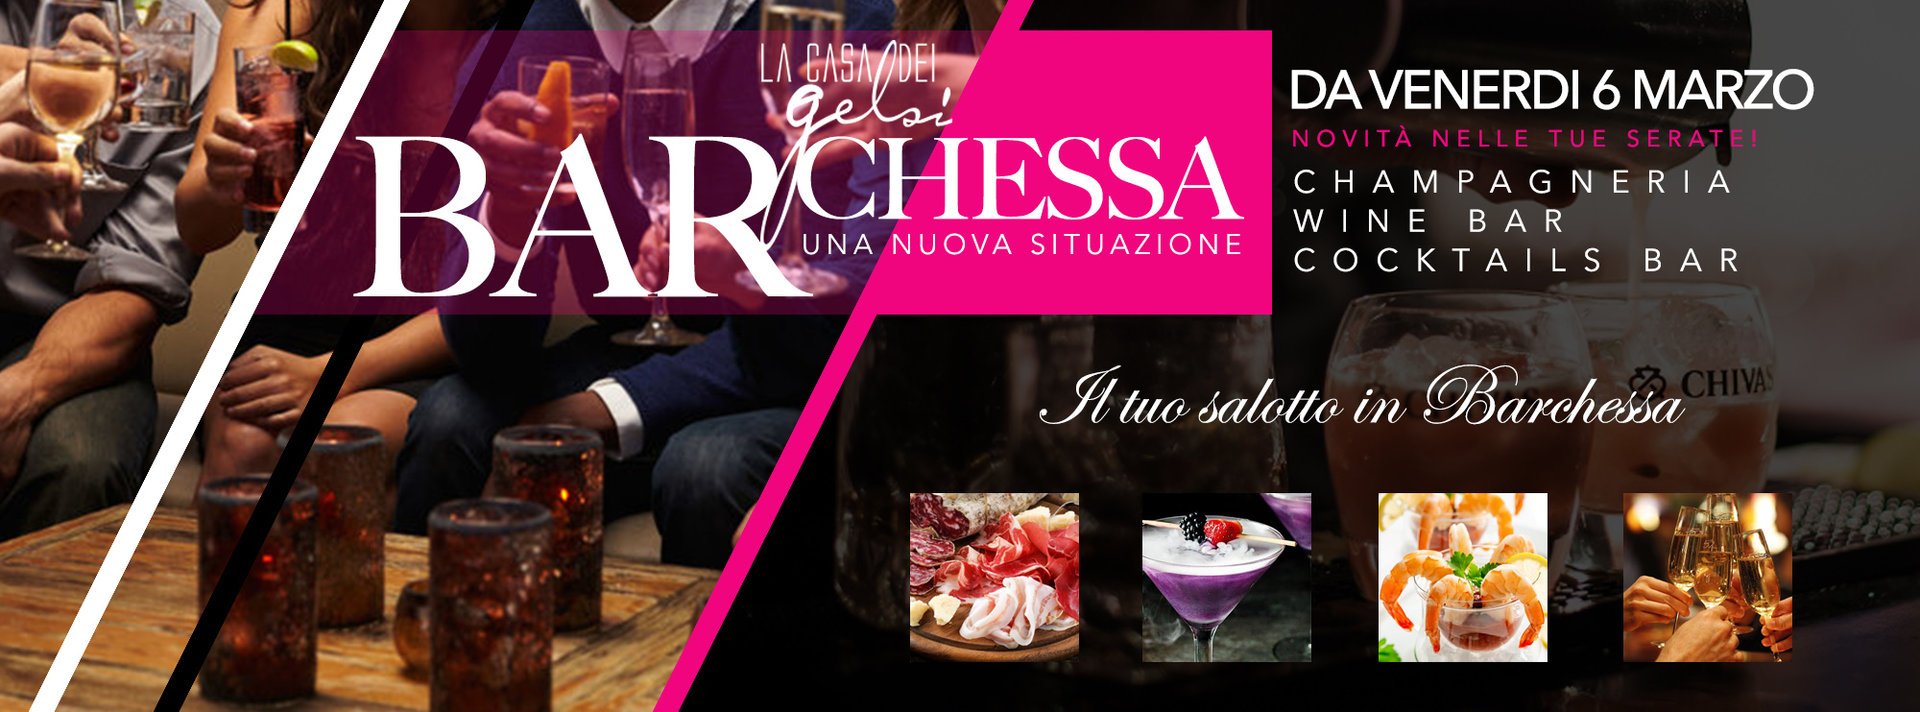 barchessa gelsi wine bar 6 marzo 2020